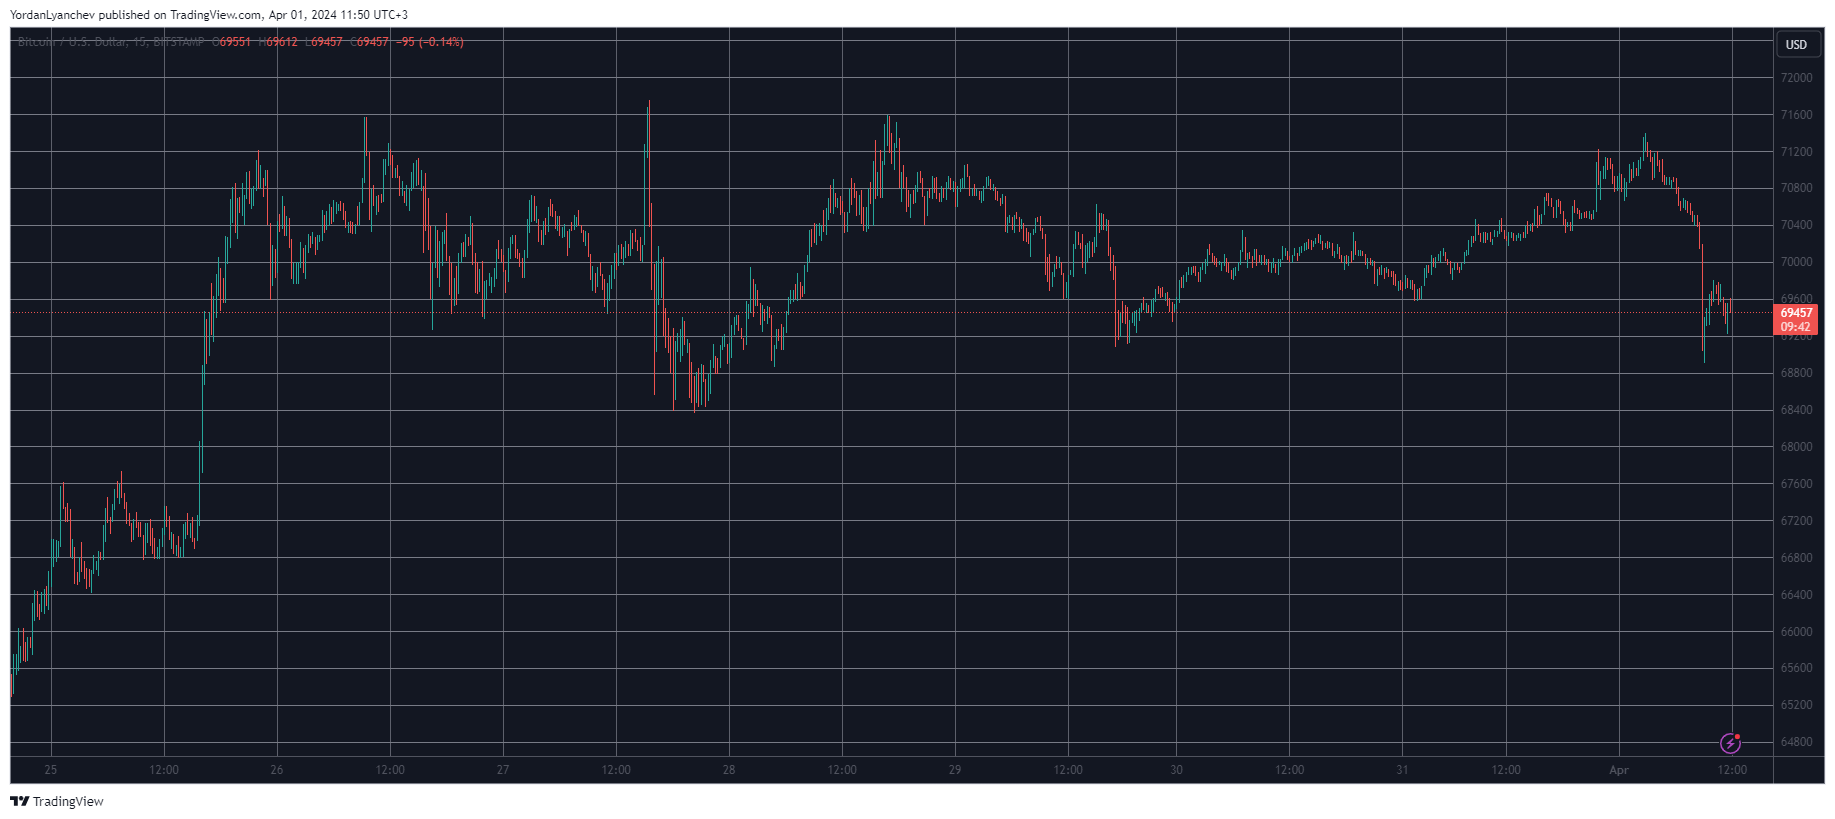 Биткойн теряет уровень в 70 тысяч долларов, Bitcoin Cash взлетает на 12% в преддверии второго сокращения в два раза (обзор рынка)